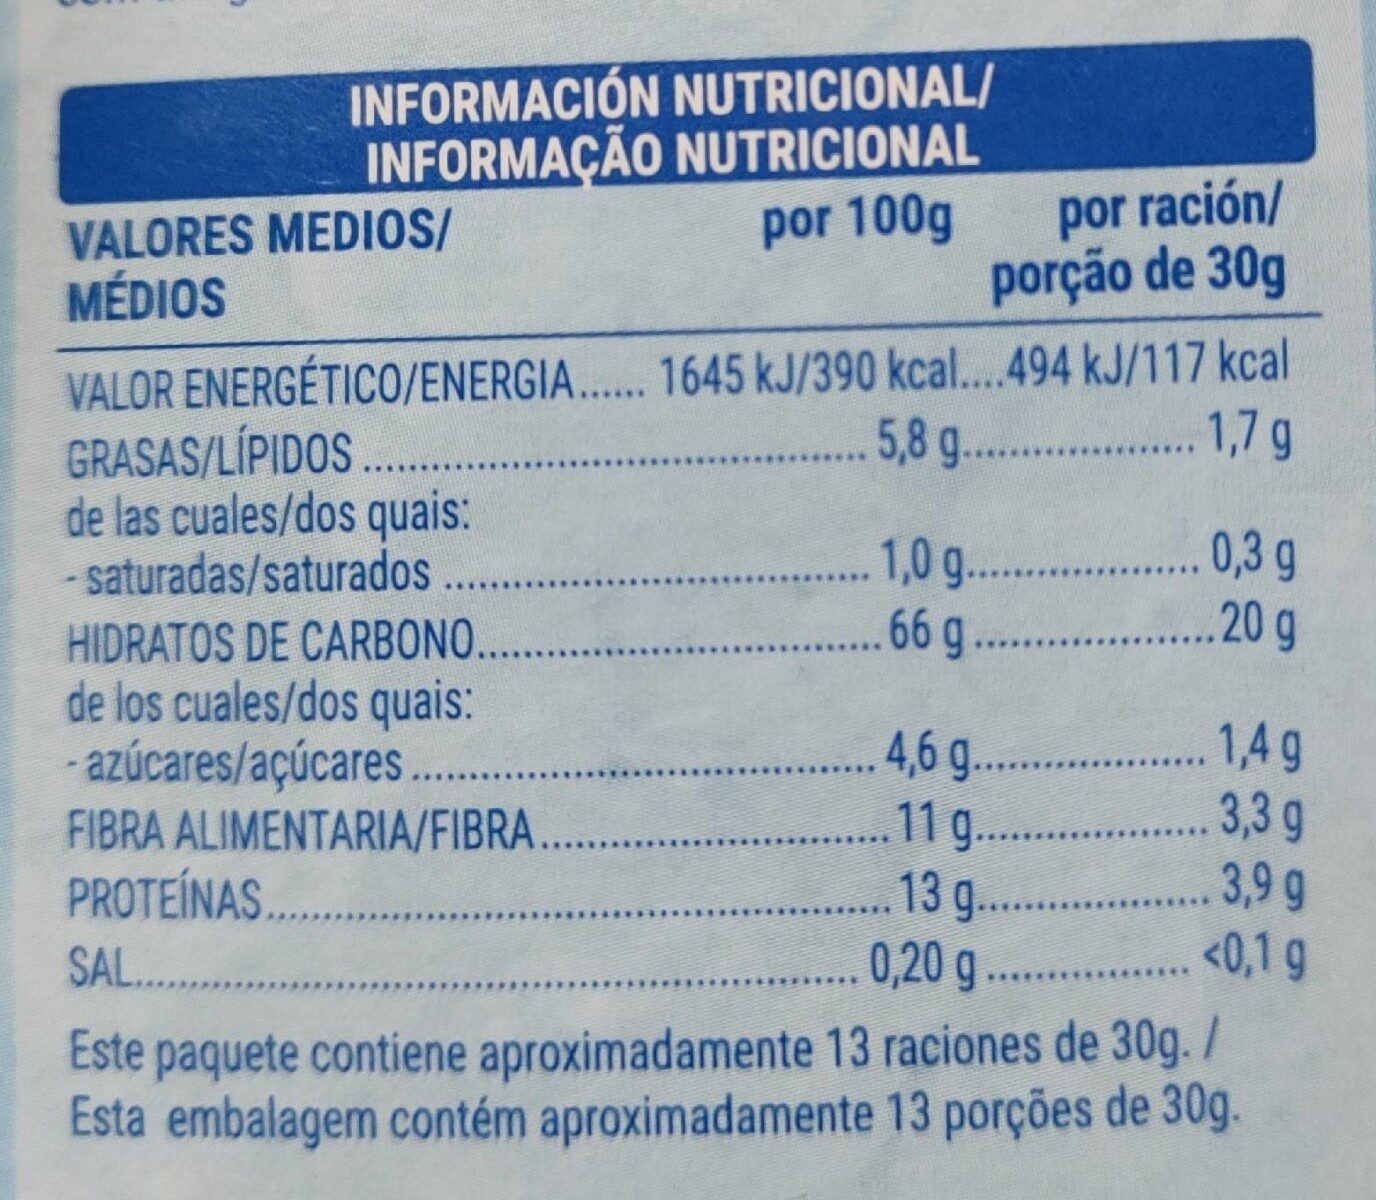 Cereales Avena Crunchy 85% Avena Integral y Bajo Contenido en Azúcar - Dados nutricionais - es